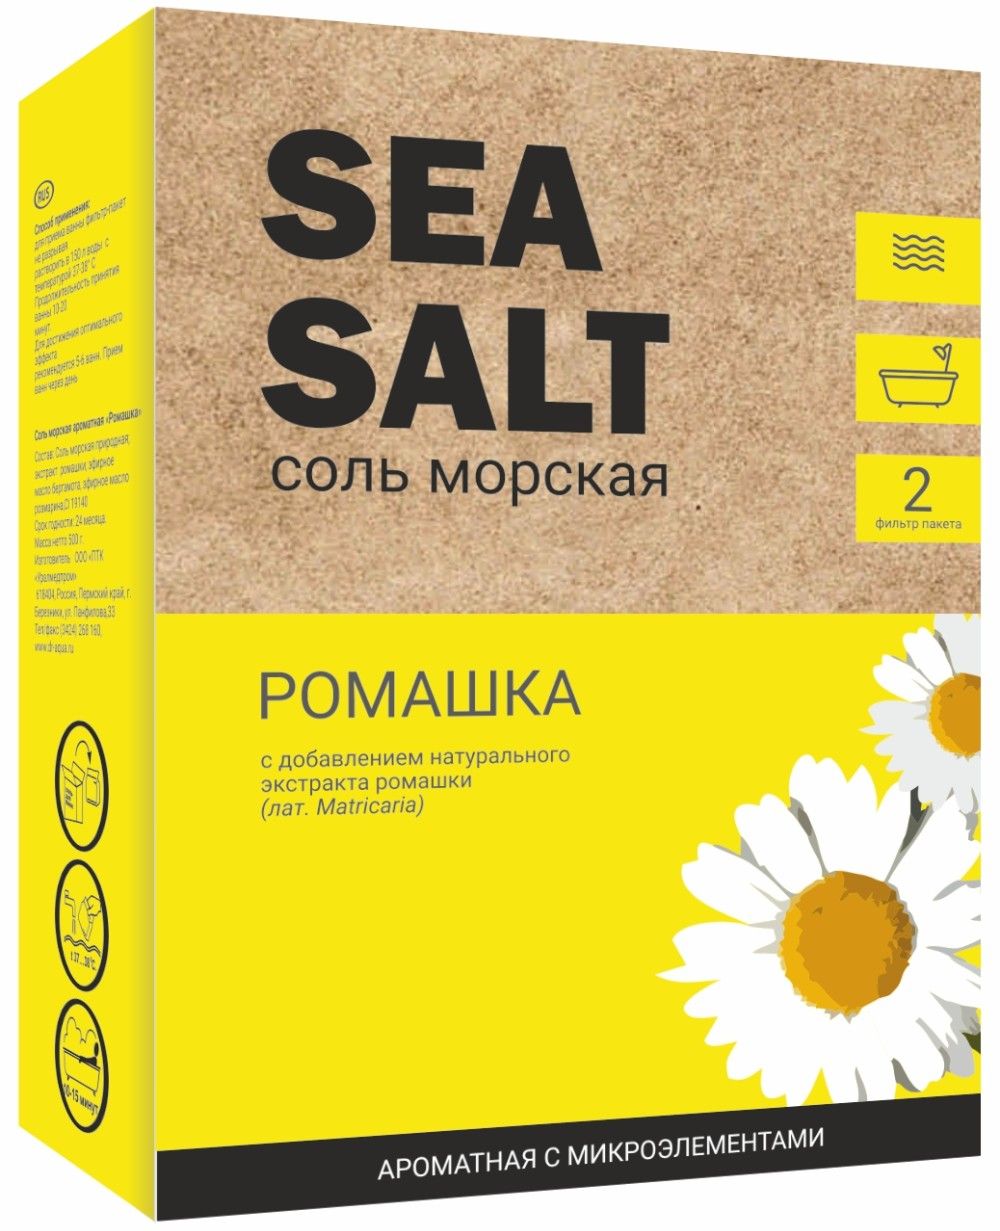 фото упаковки Соль морская экстракт ромашки